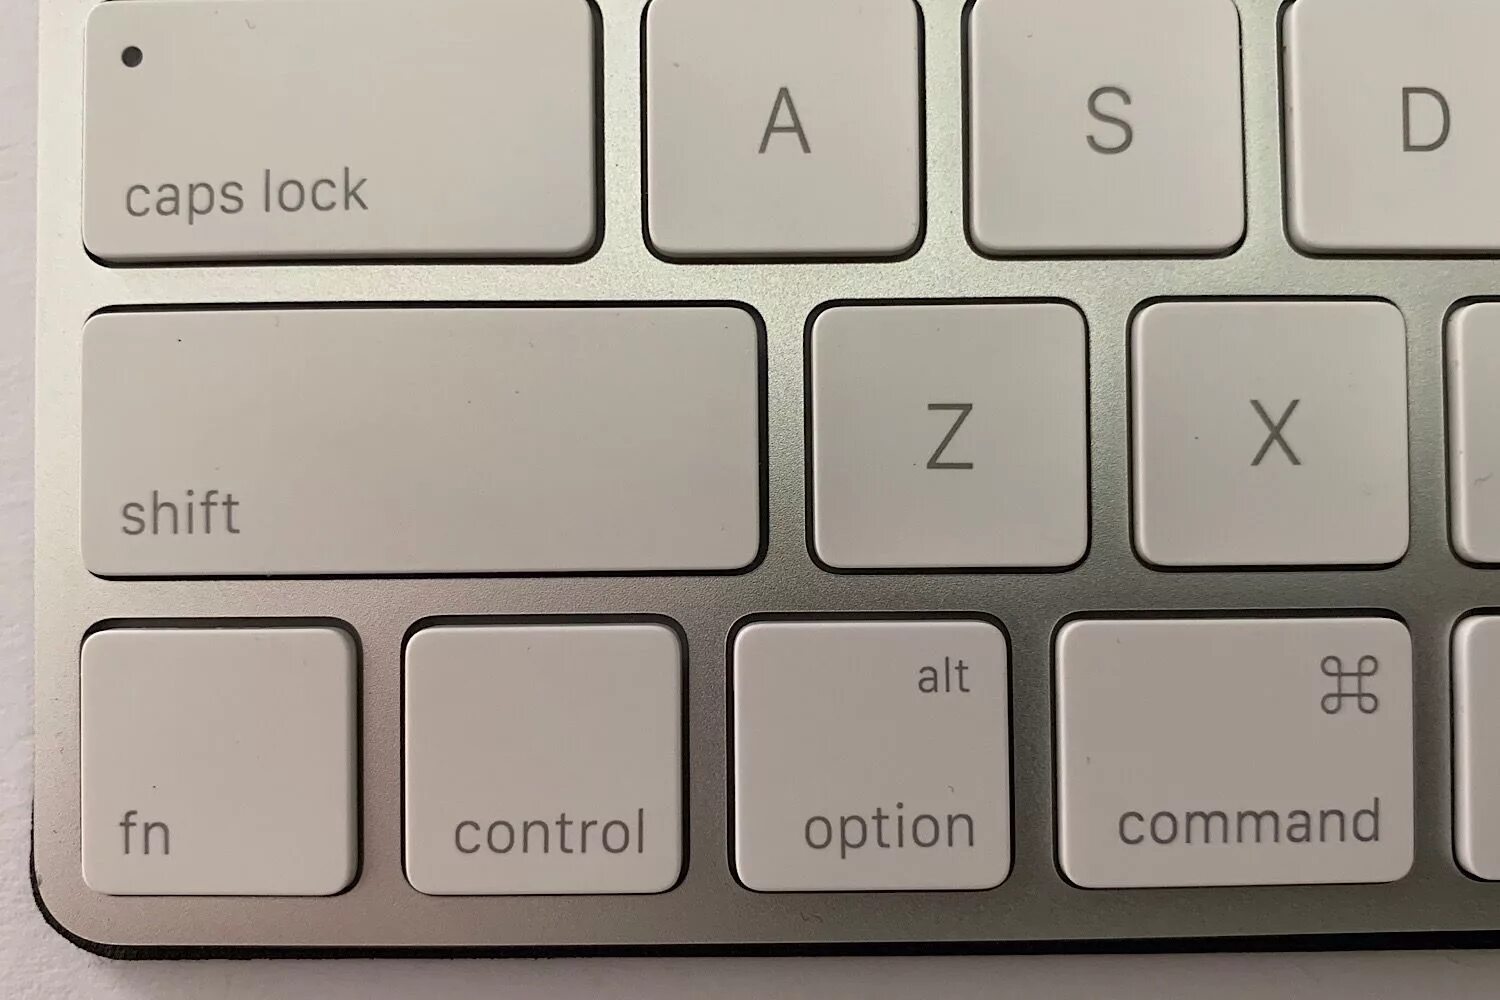 Command на клавиатуре